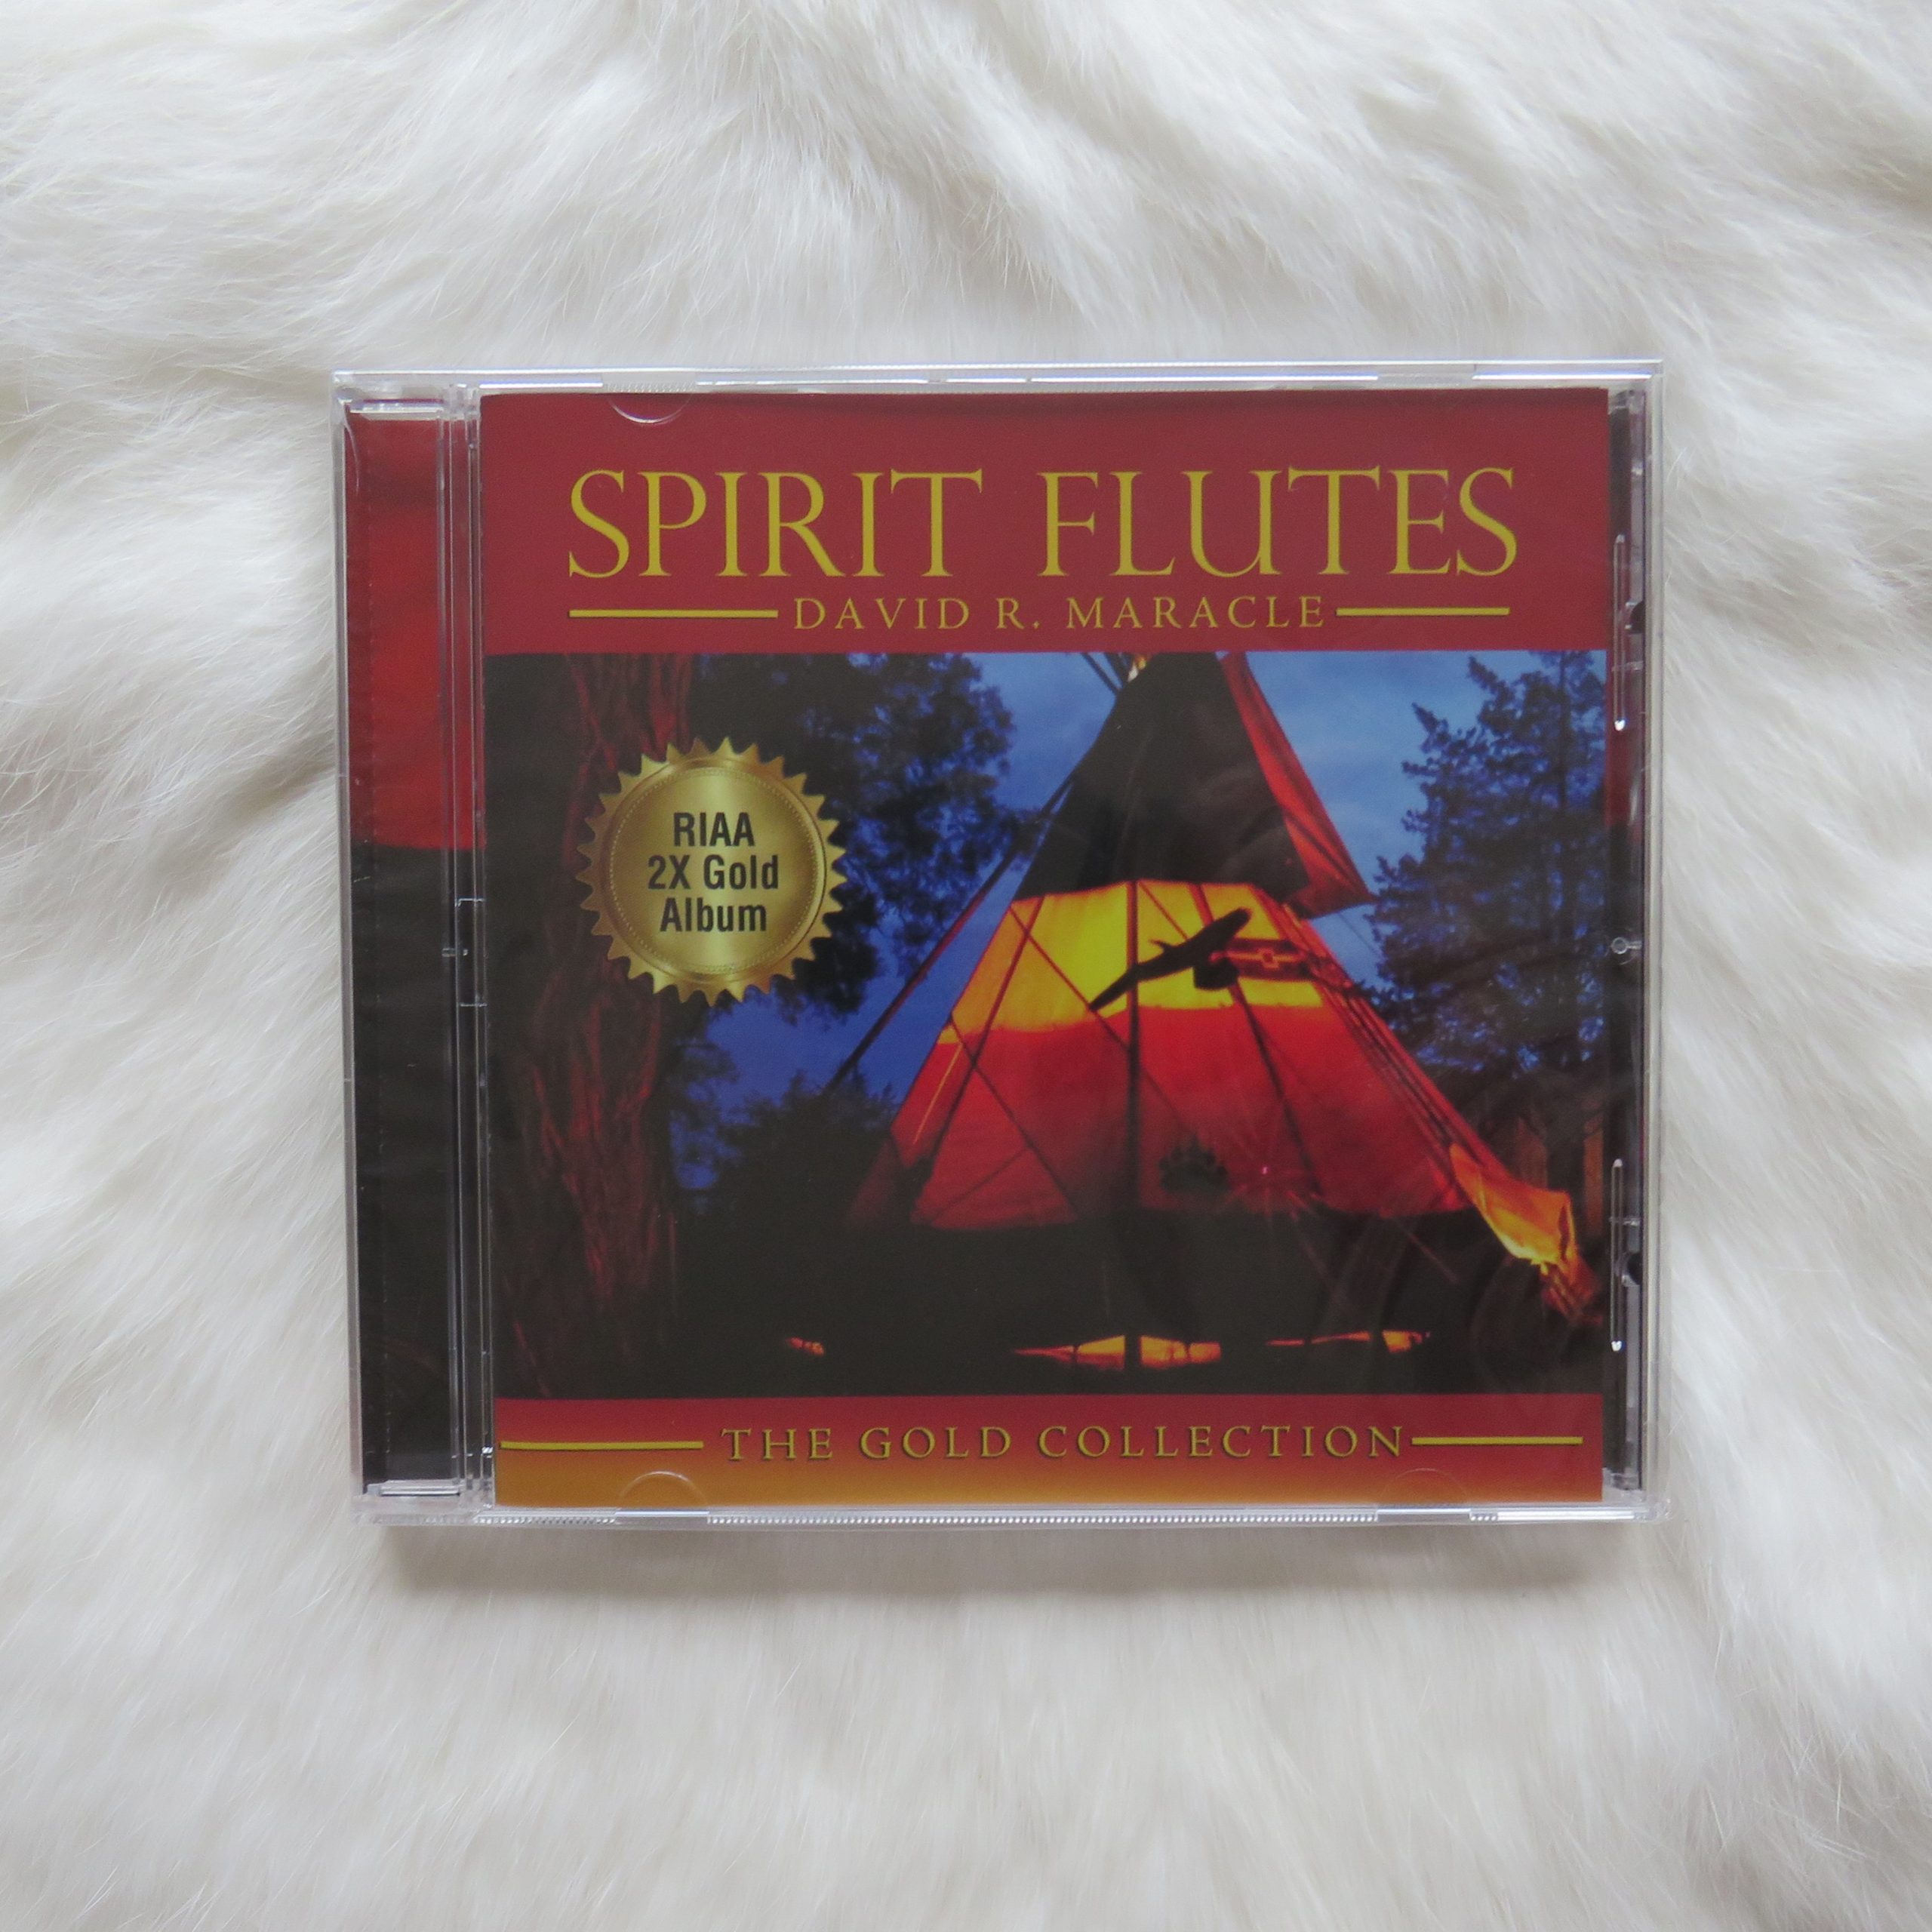 CD David R Maracle “spirit flutes”